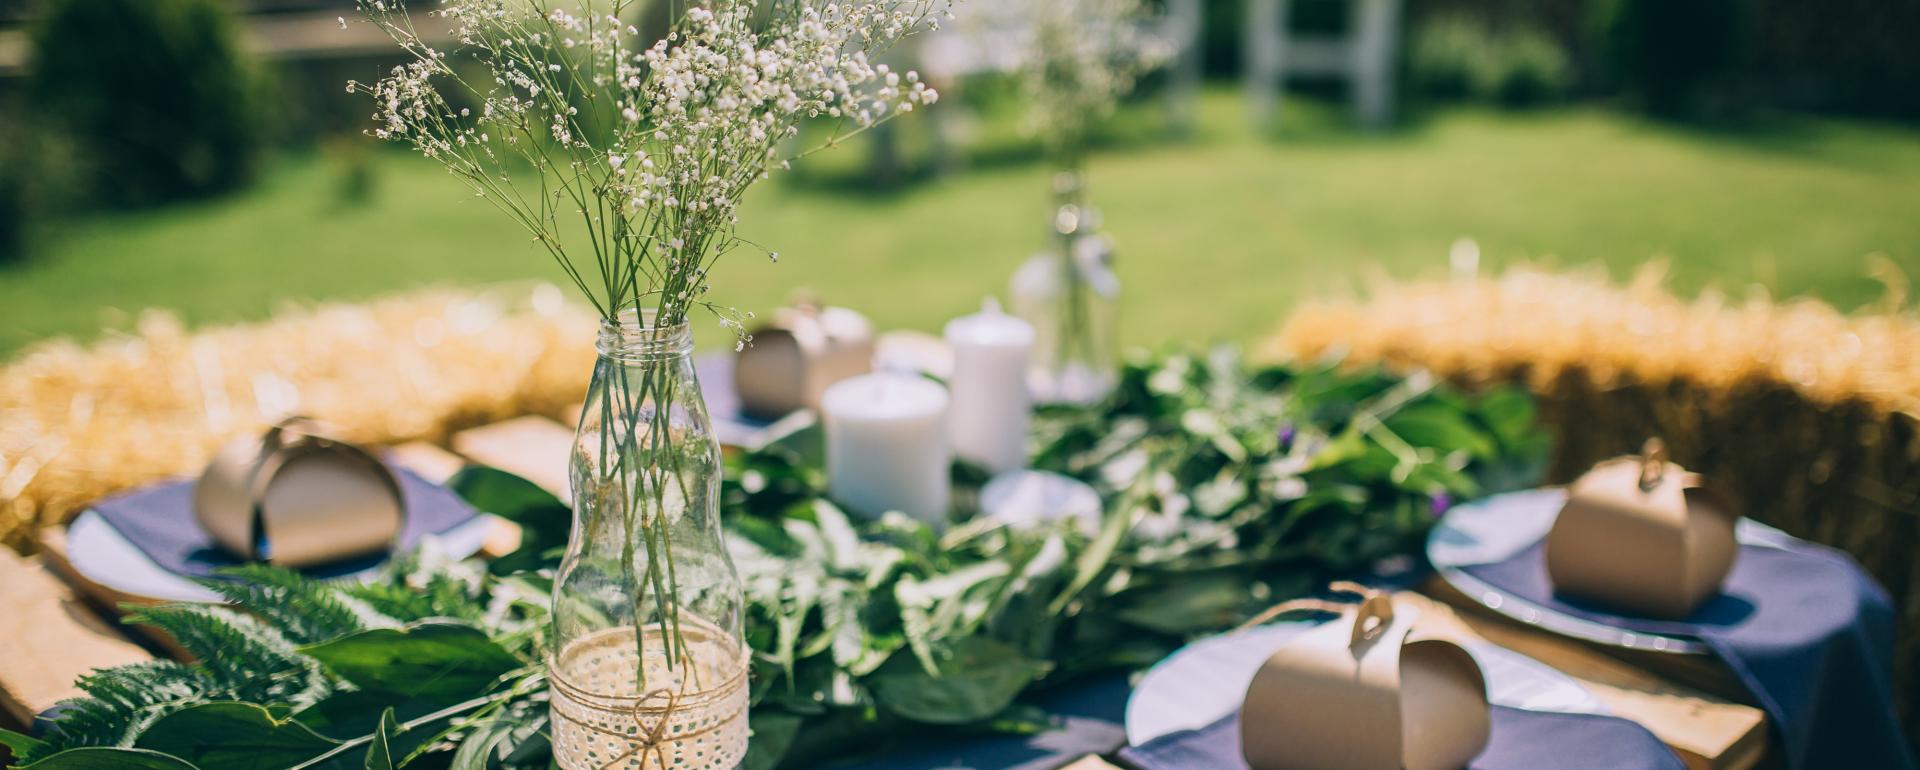 Pierwsze letnie przyjęcie w ogrodzie. Jak ładnie udekorować stół?